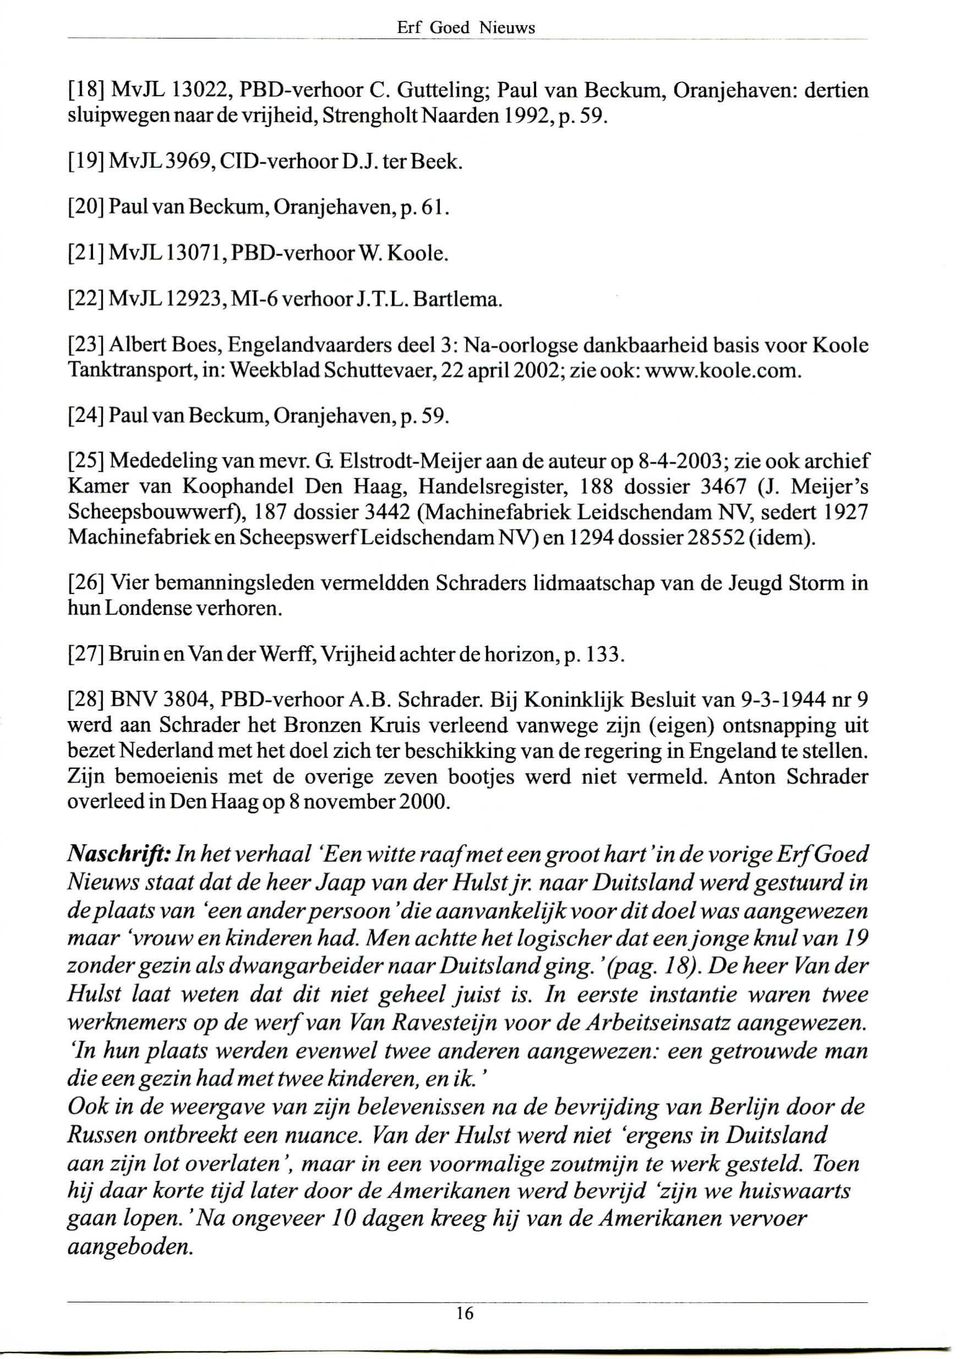 [23] Albert Boes, Engelandvaarders deel 3: Na-oorlogse dankbaarheid basis voor Koole Tanktransport, in: Weekblad Schuttevaer, 22 april 2002; zie ook: www.koole.com.